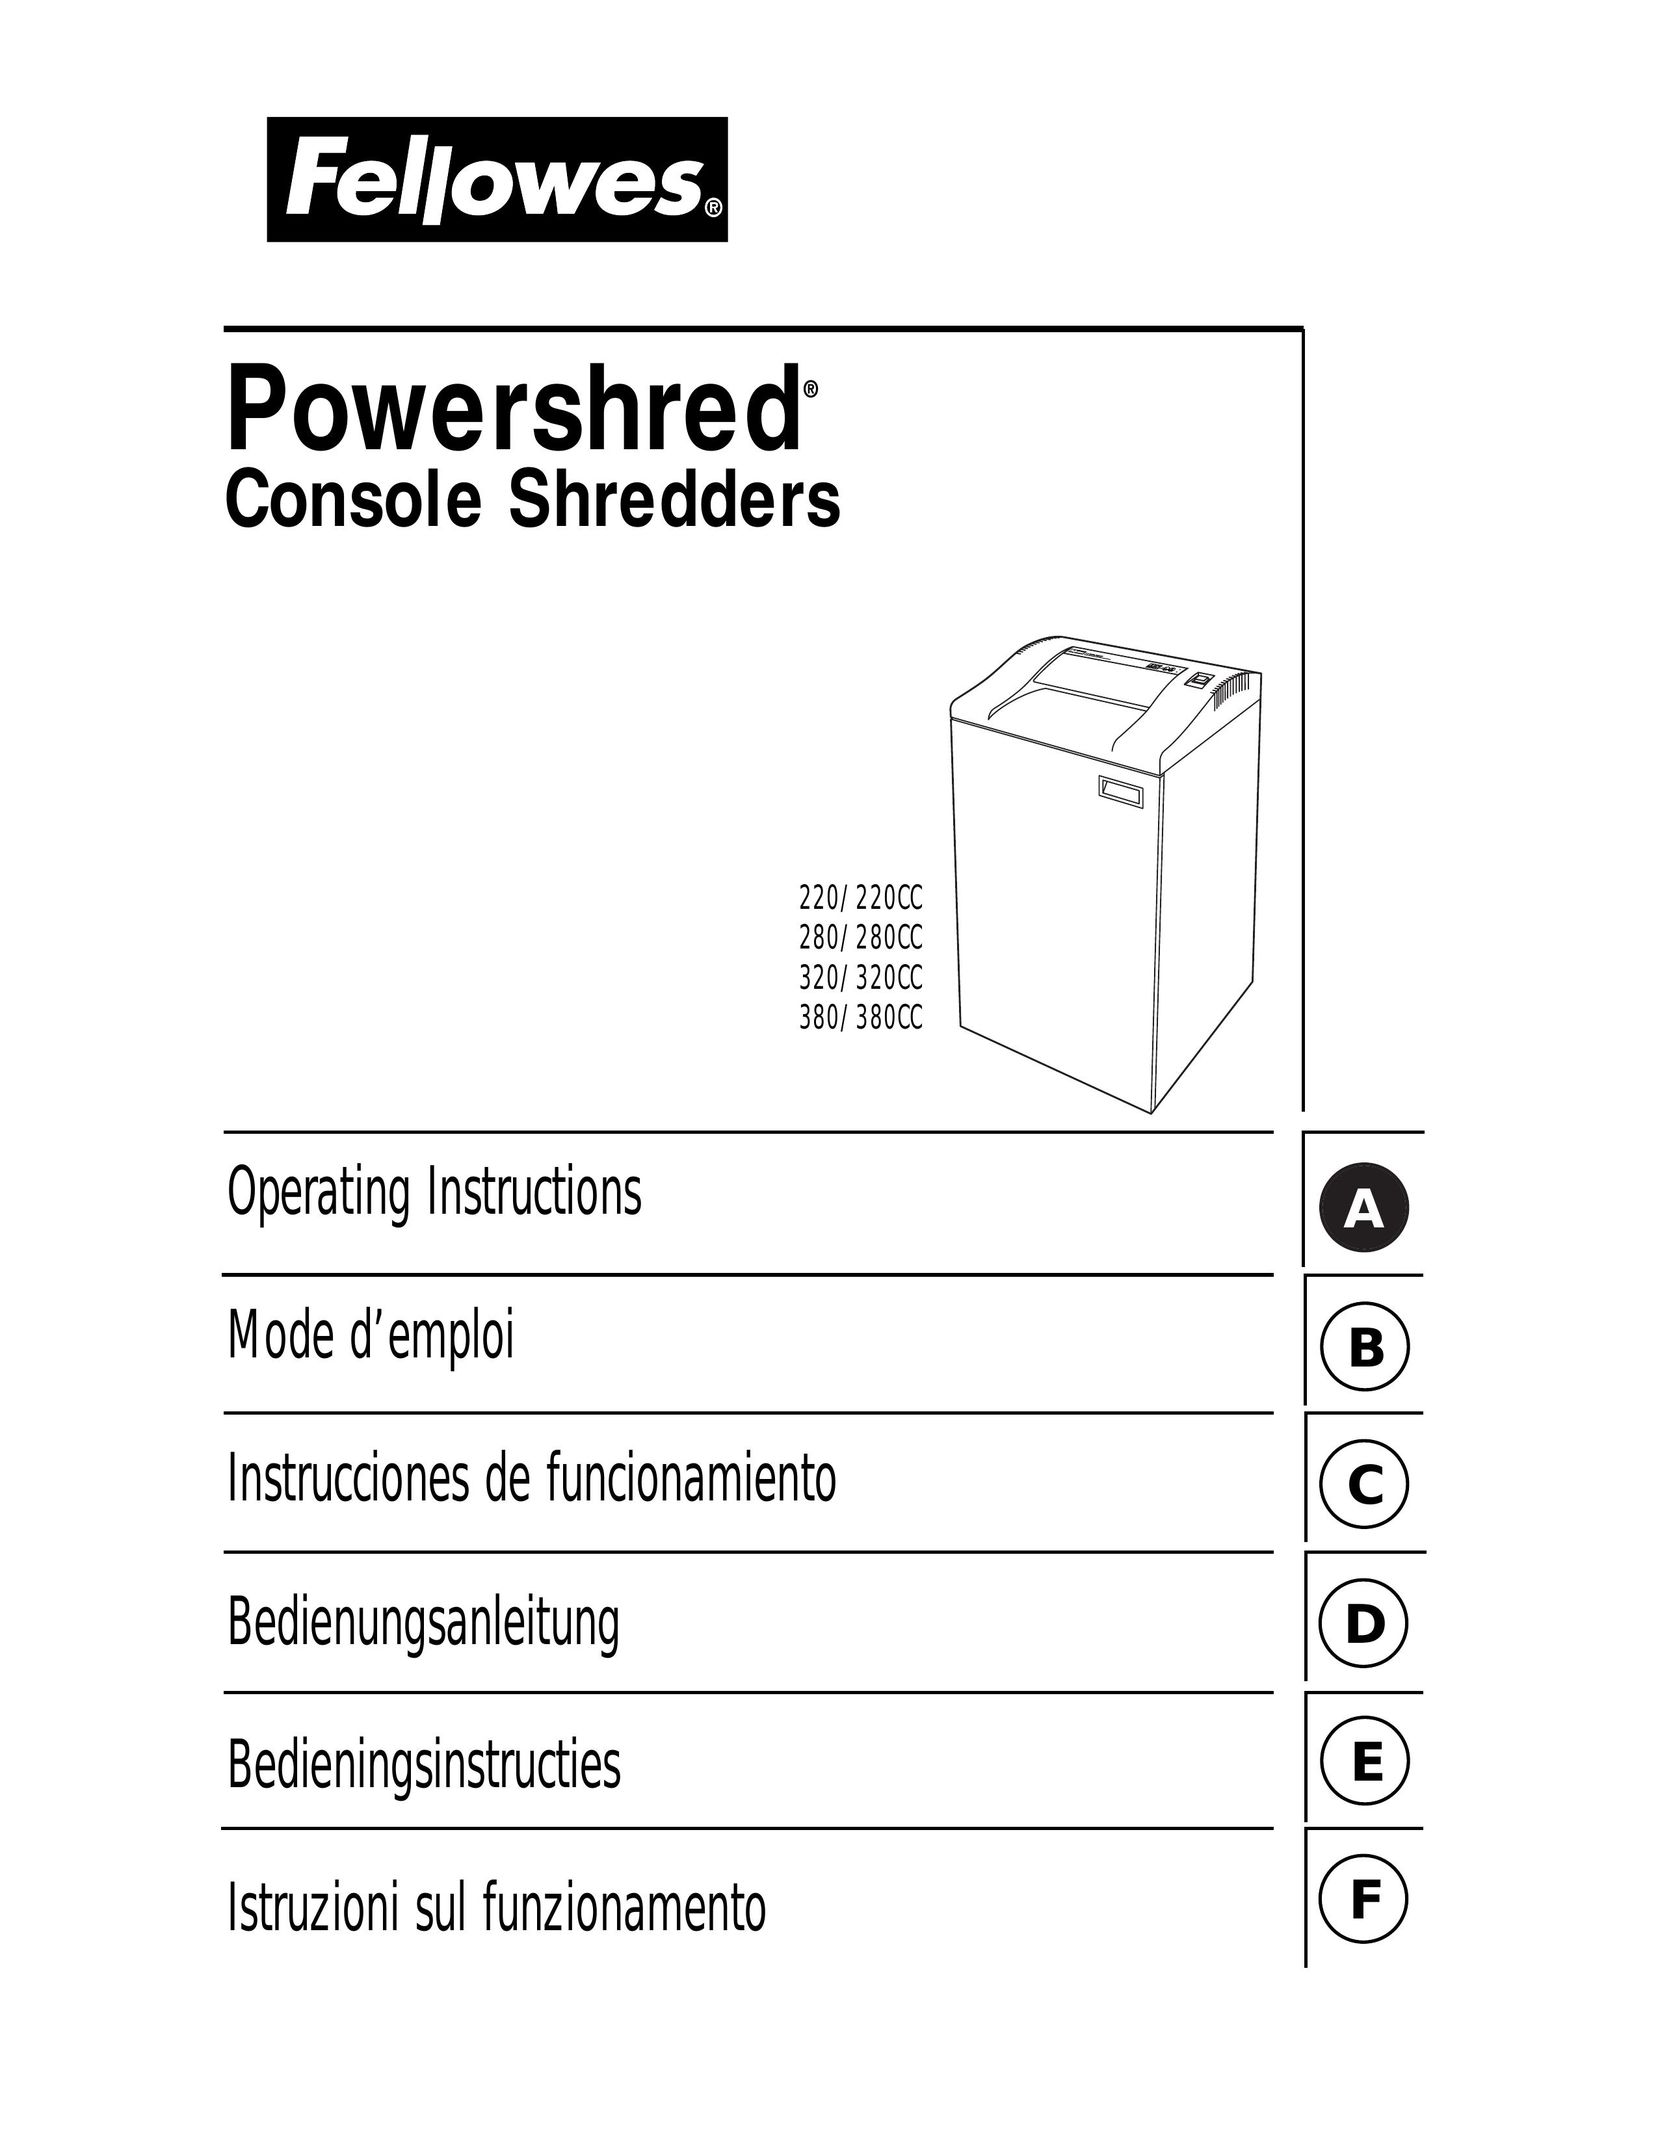 Fellowes 380CC Paper Shredder User Manual